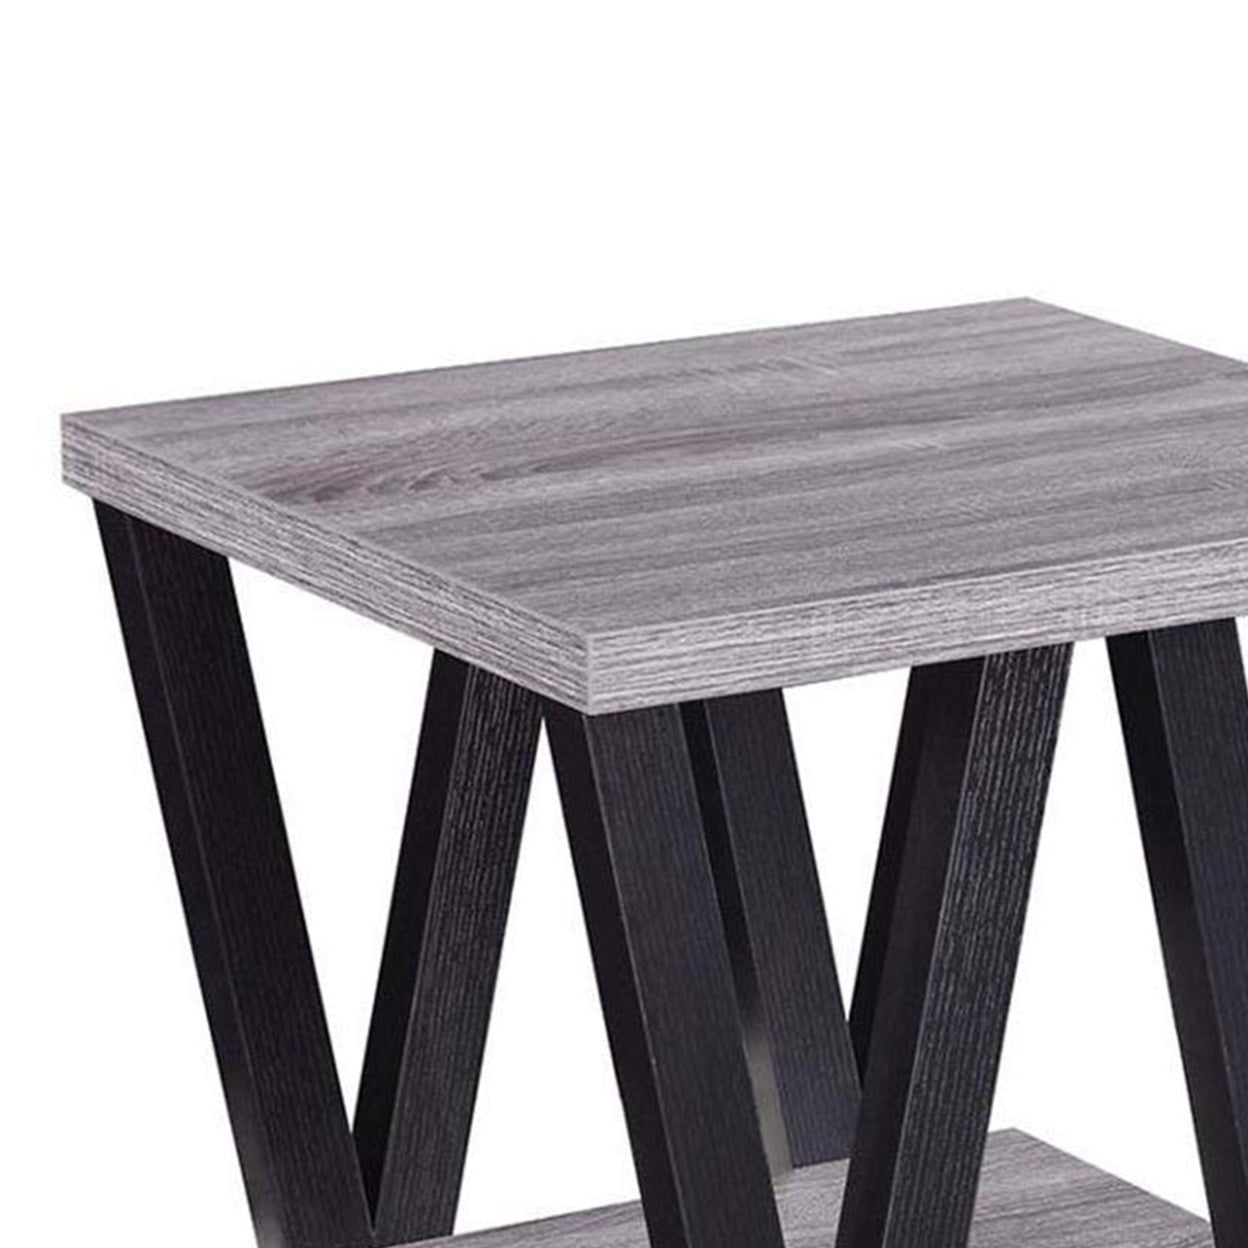 Higgins V-shaped End Table Black and Antique Grey